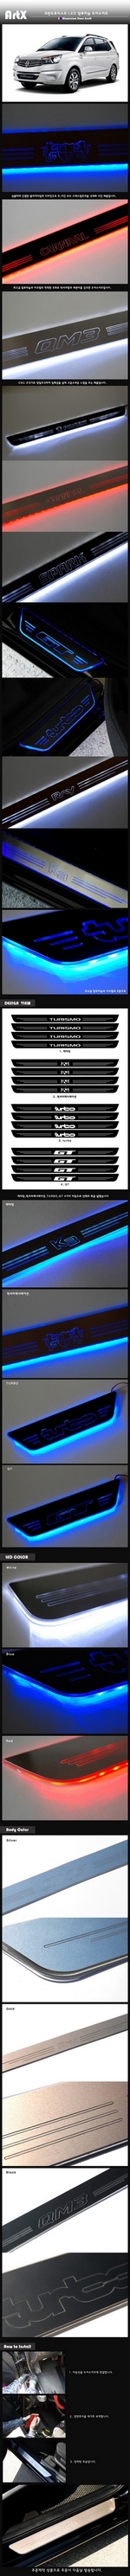 Накладки на пороги алюминиевые с подсветкой (вариант 2) ArtX SsangYong Stavic 2013-2019